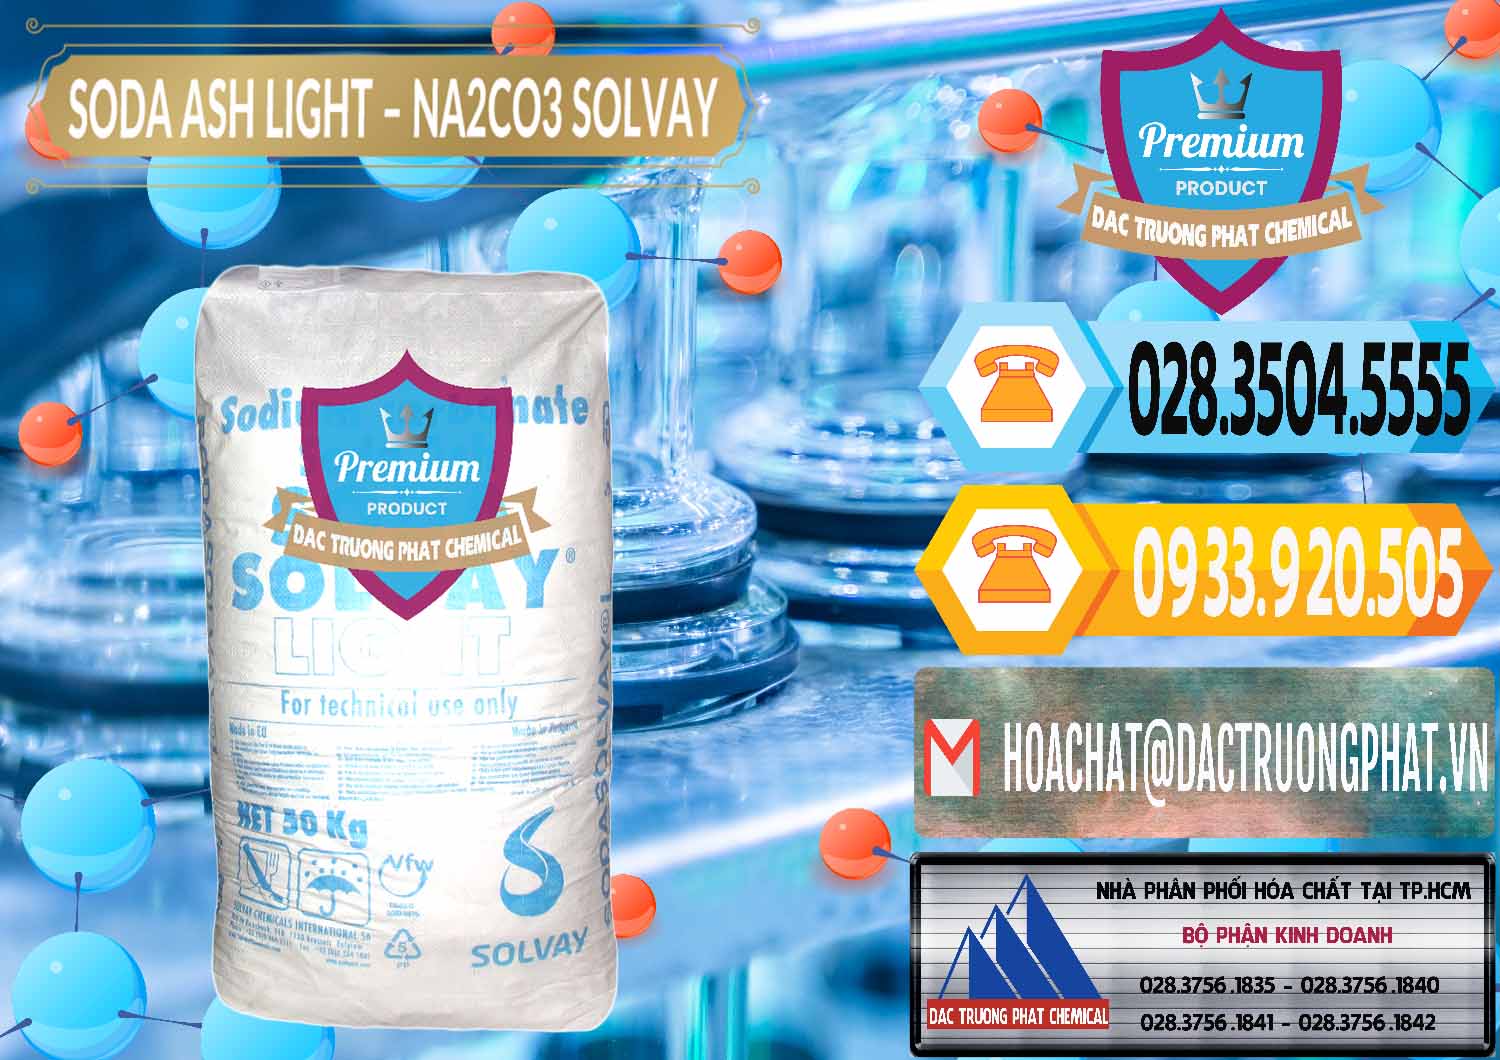 Cty kinh doanh và bán Soda Ash Light - NA2CO3 Solvay Bulgaria - 0126 - Công ty chuyên cung cấp - kinh doanh hóa chất tại TP.HCM - hoachattayrua.net